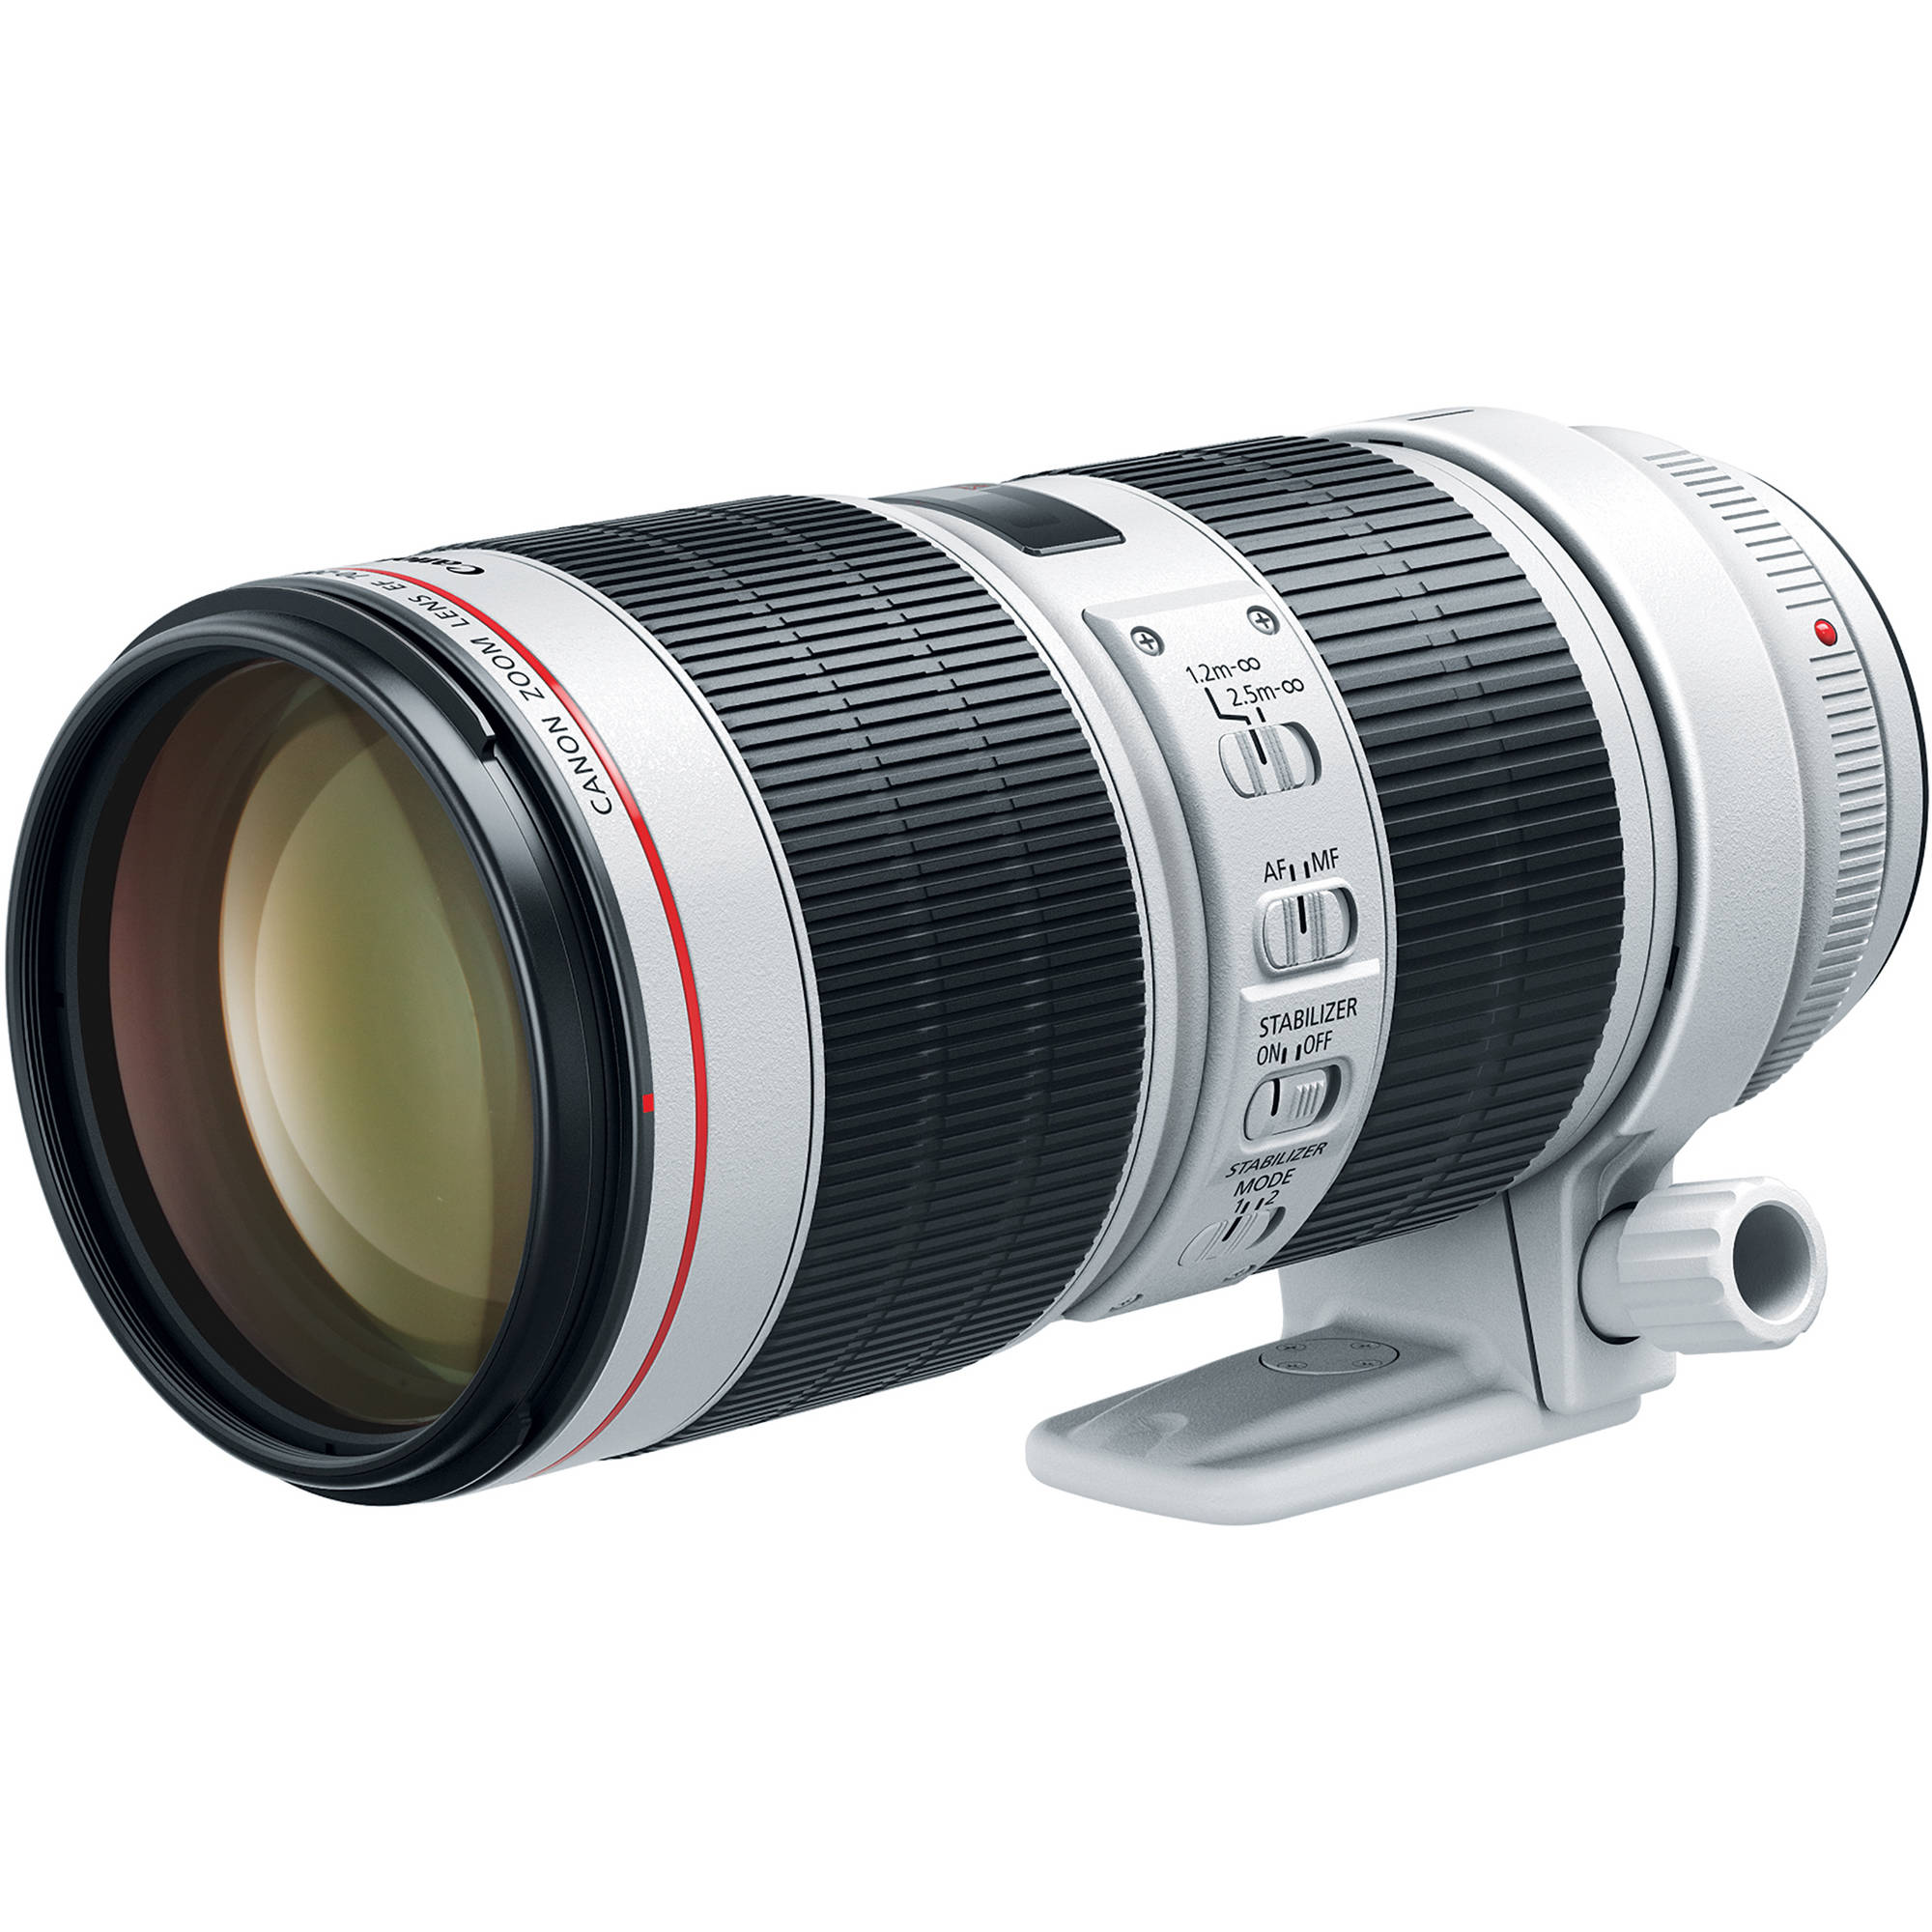 Canon EF 70-200mm F2.8L IS III USM (Mới 100%) - Bảo hành chính hãng 02 năm trên toàn quốc Cover